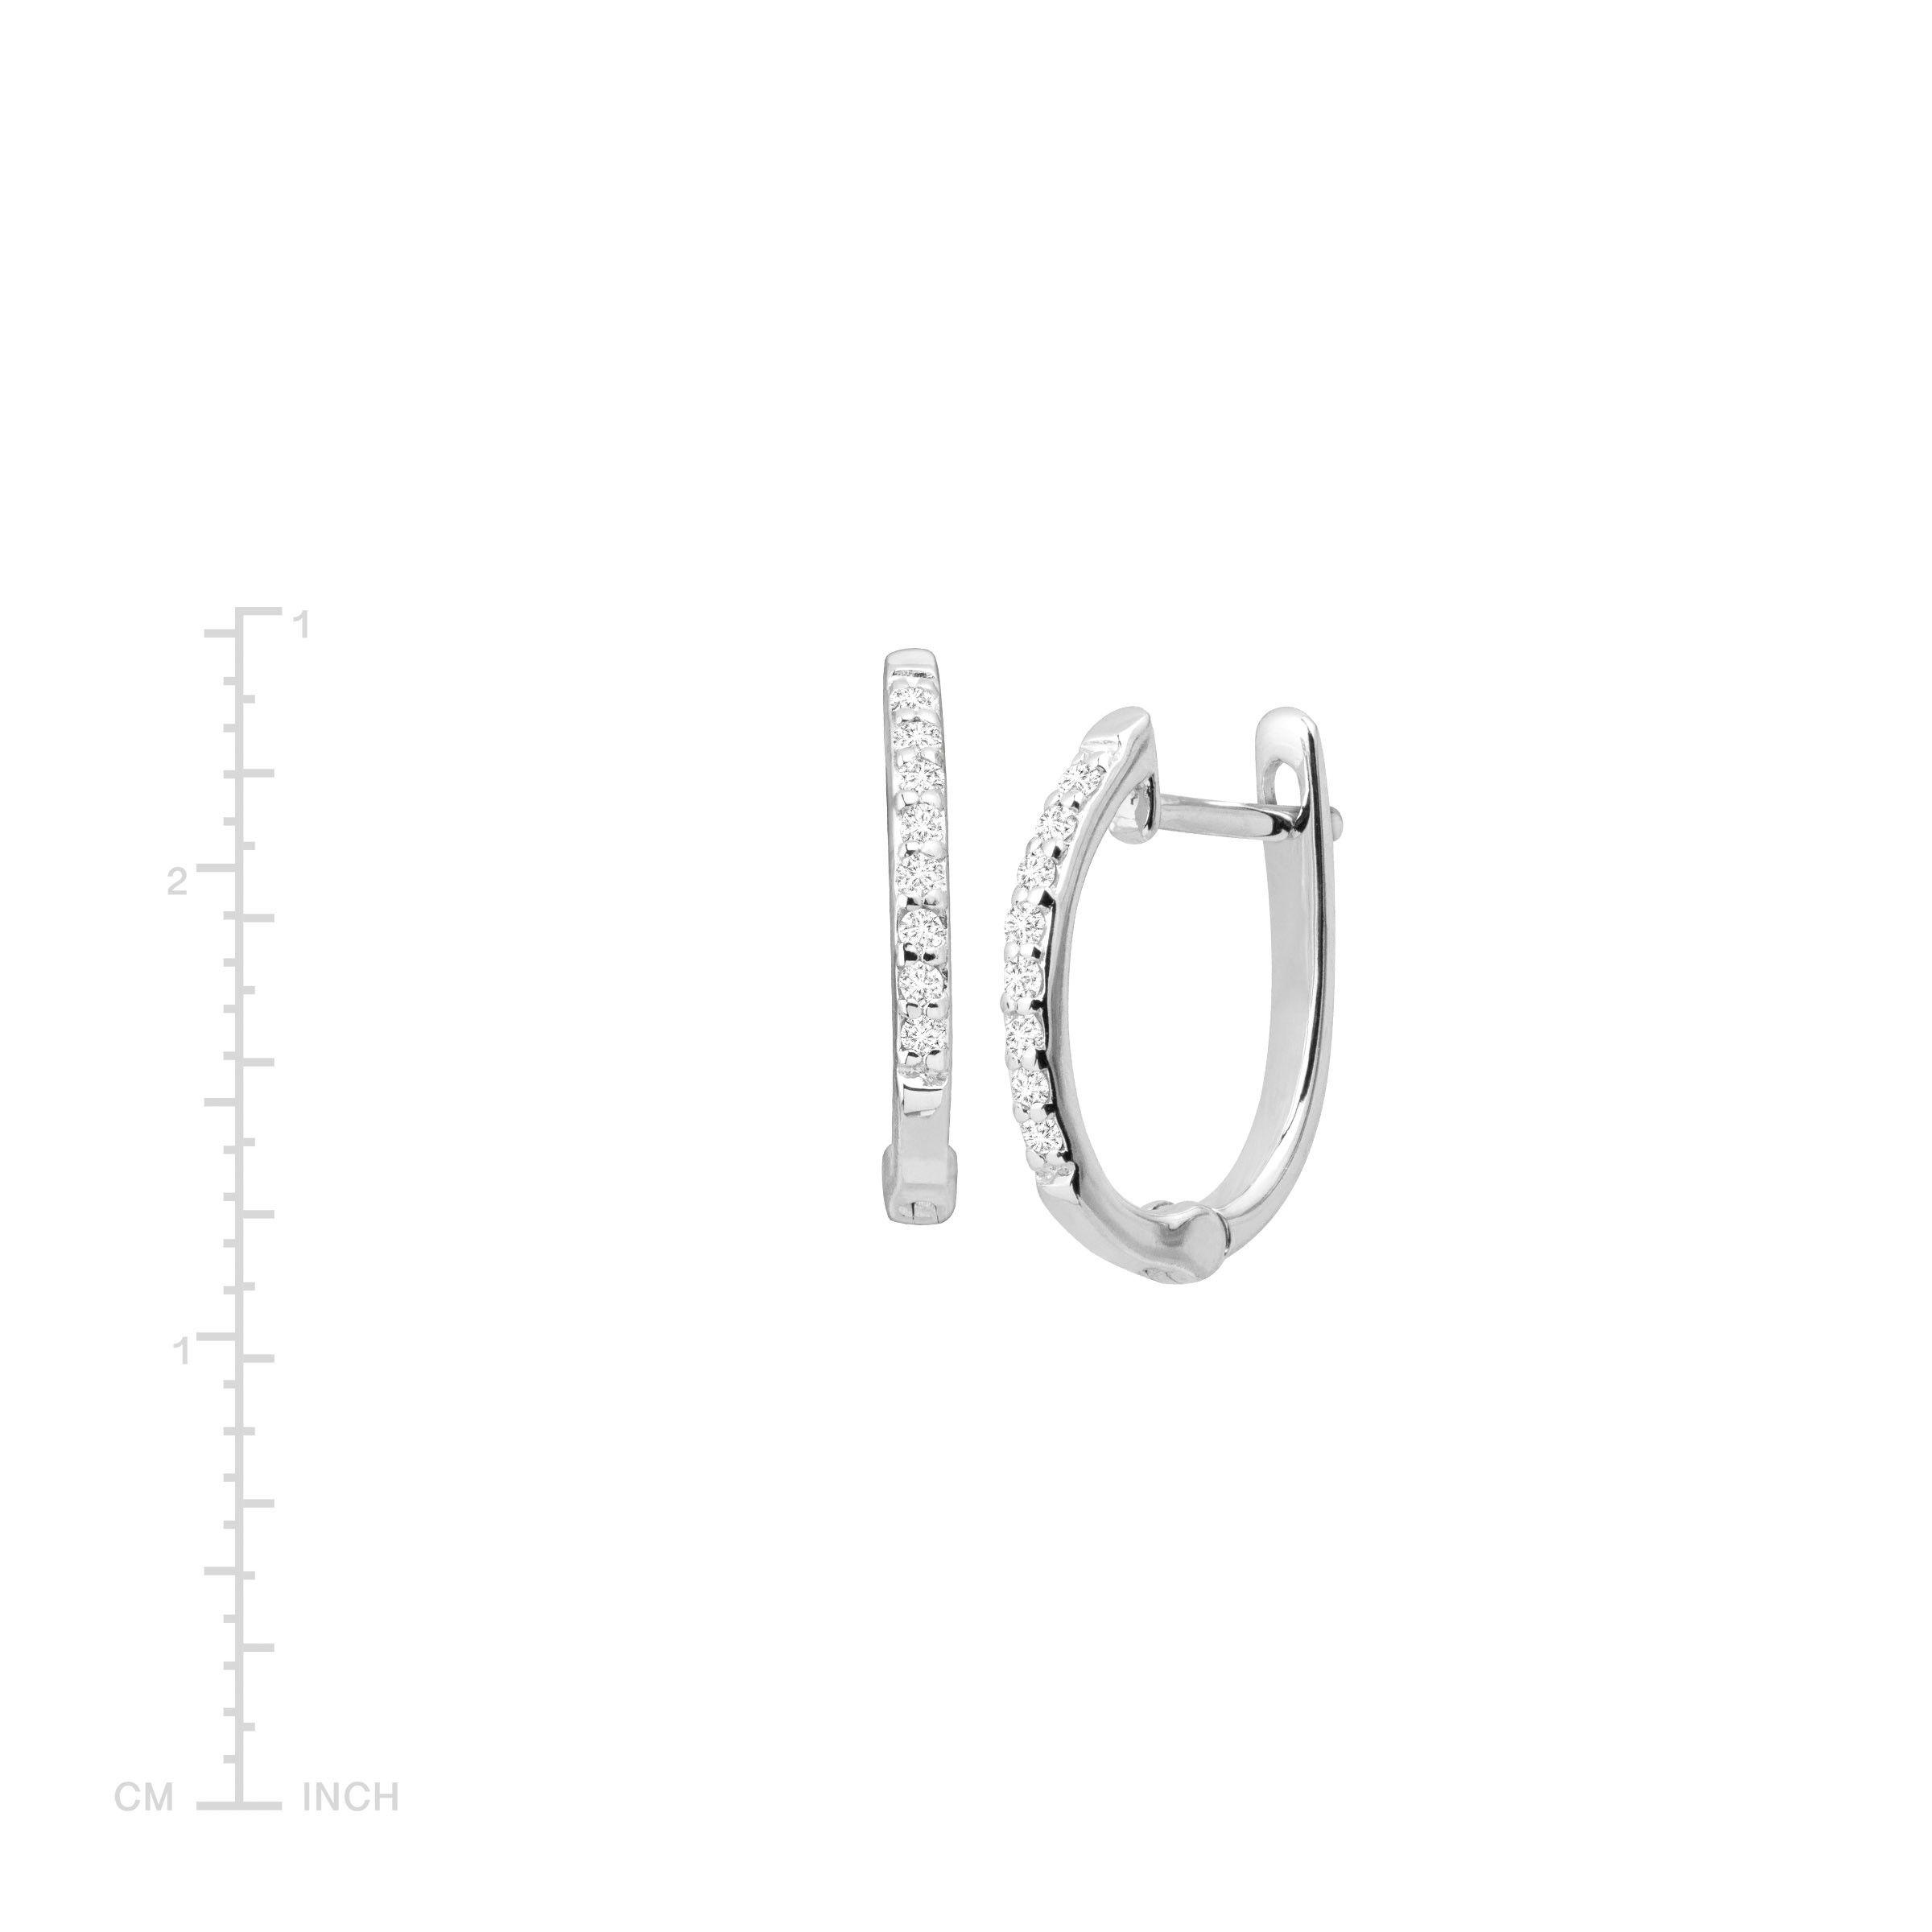 White Gold Sleek Logo - Huggie Hoop Earrings with Diamonds in 14K White Gold 742323120842 | eBay